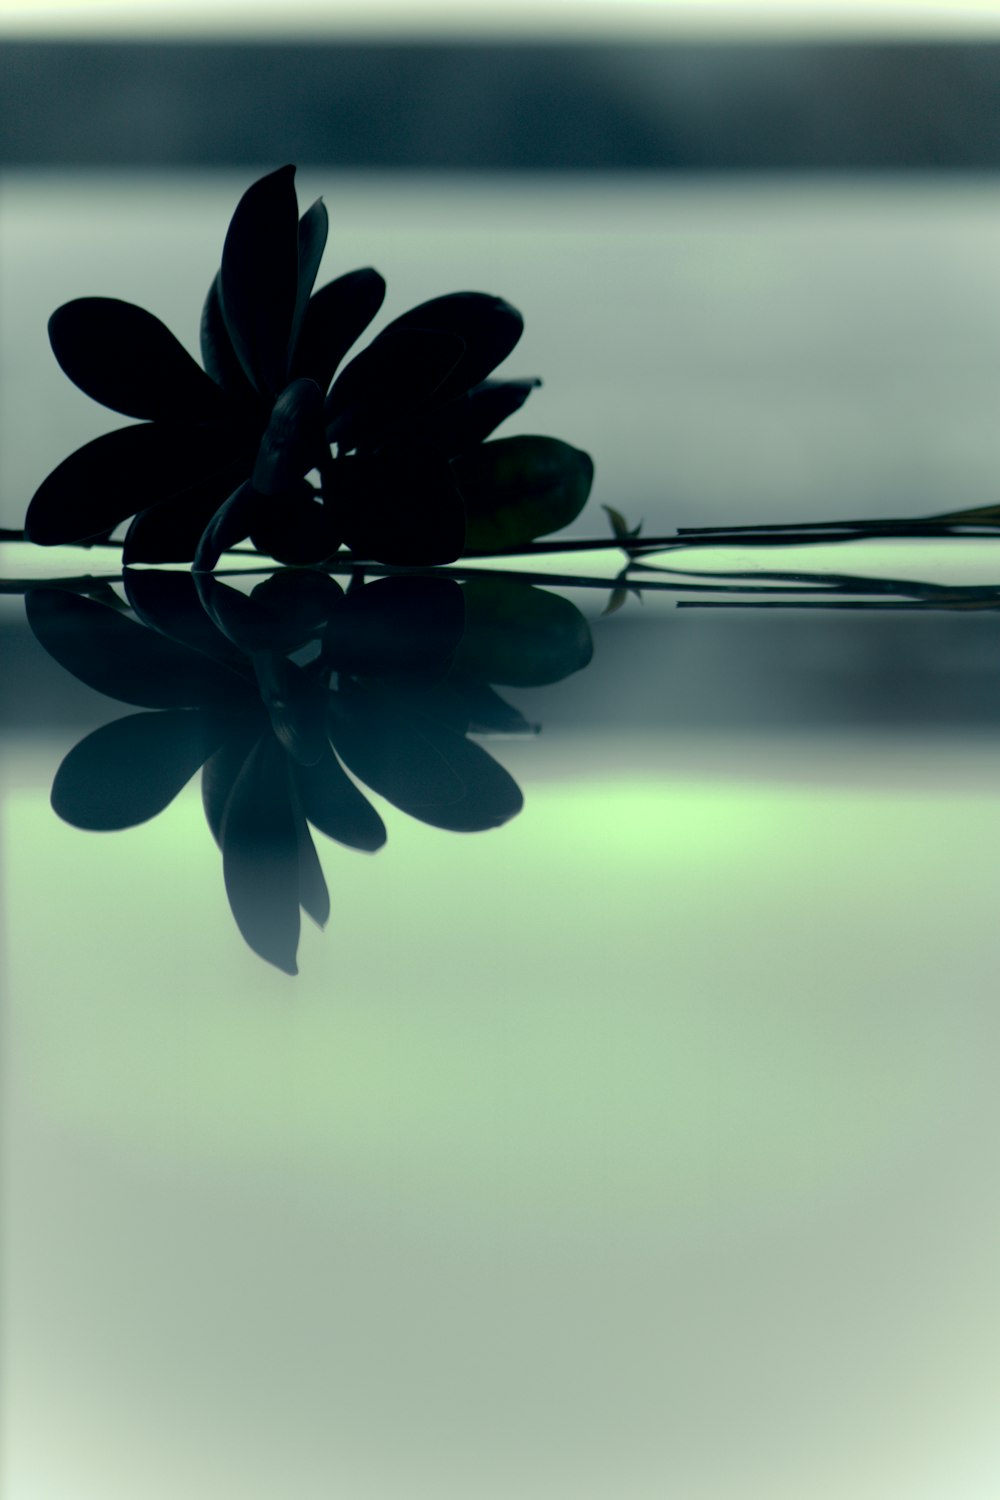 une seule fleur se reflète dans l’eau